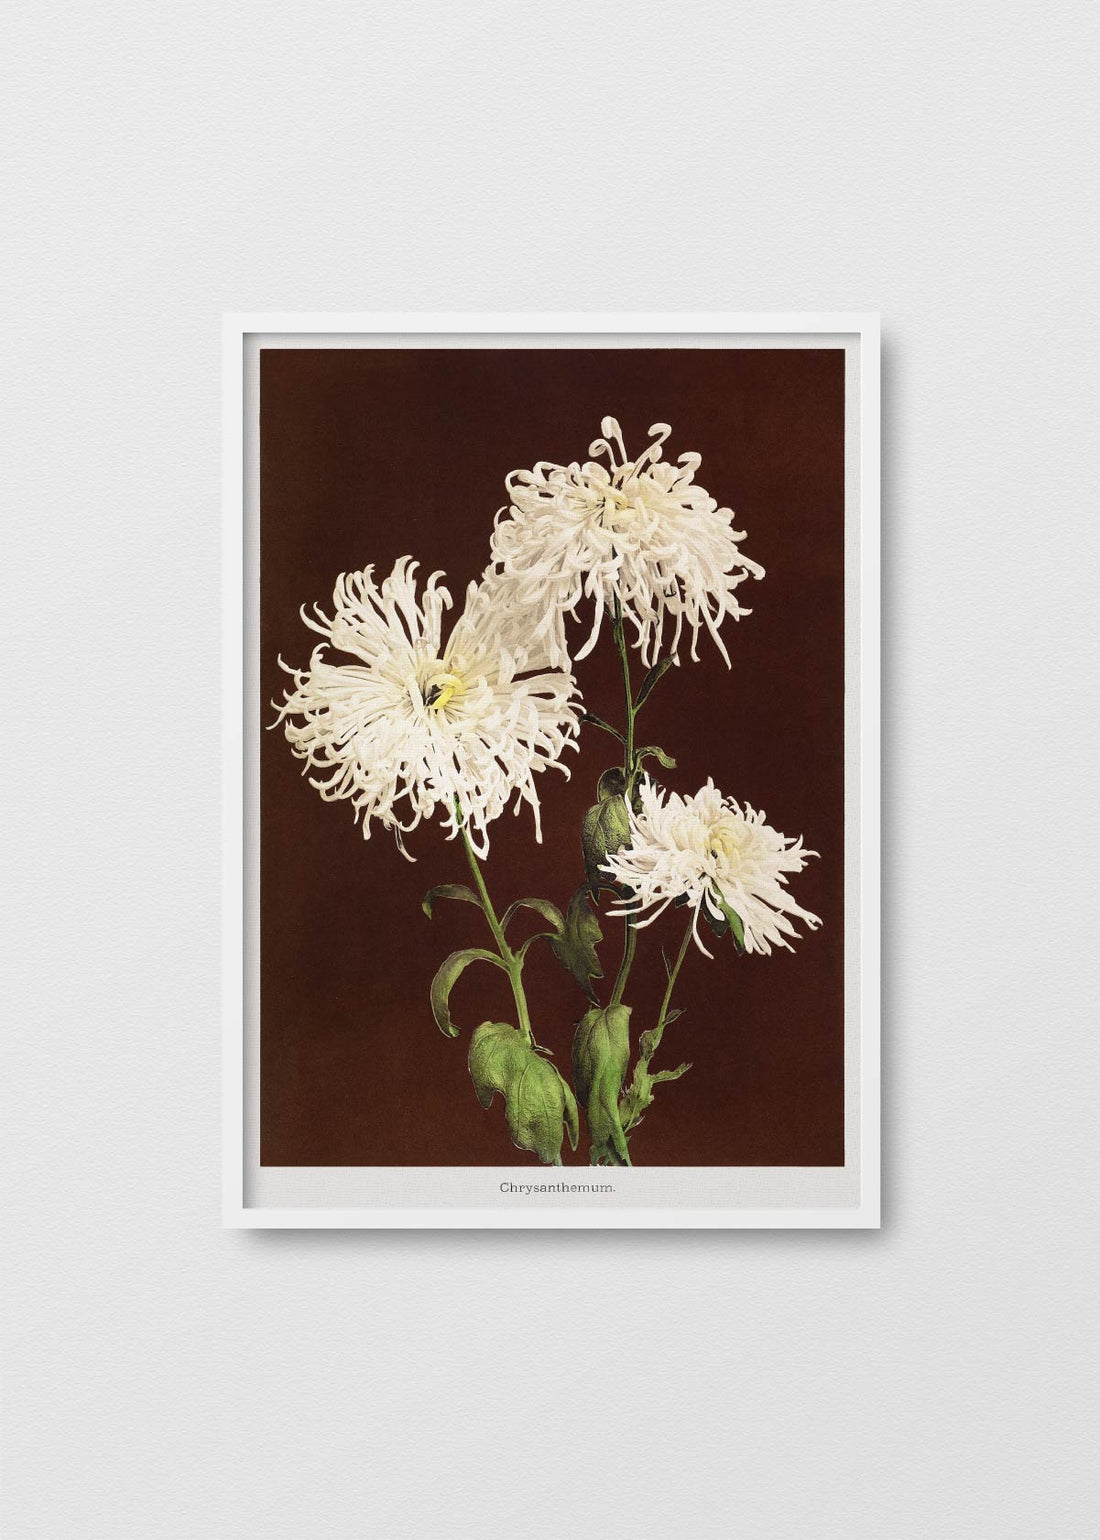 Chrysanthemum - Testimoniaprints